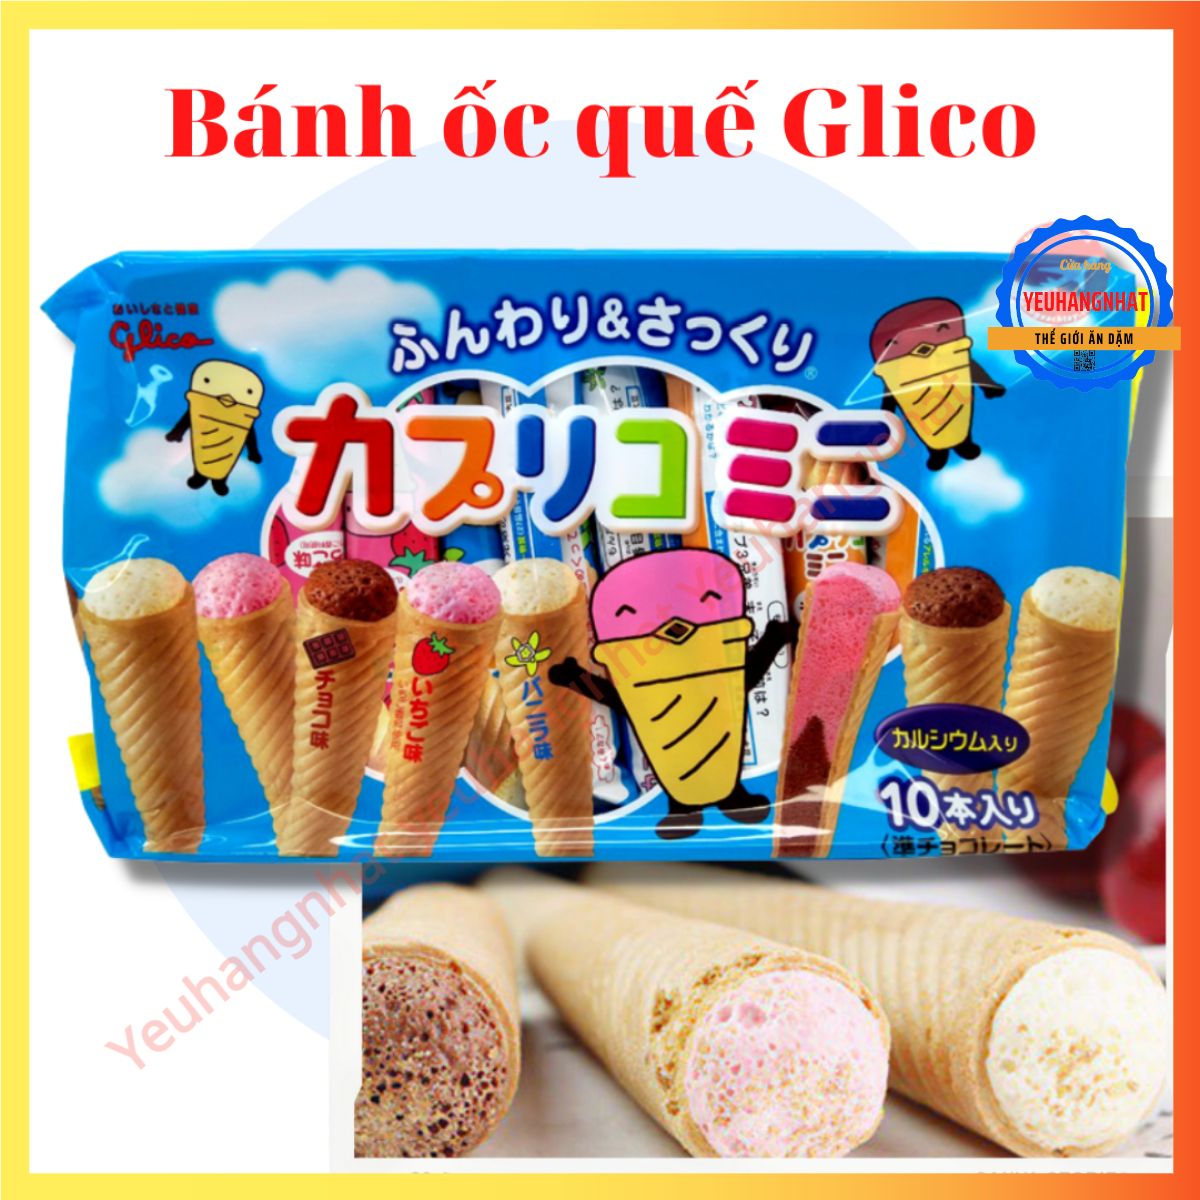 Bánh ốc quế 10 chiếc Glico thơm ngon giàu dưỡng chất hàng nội địa Nhật Bản